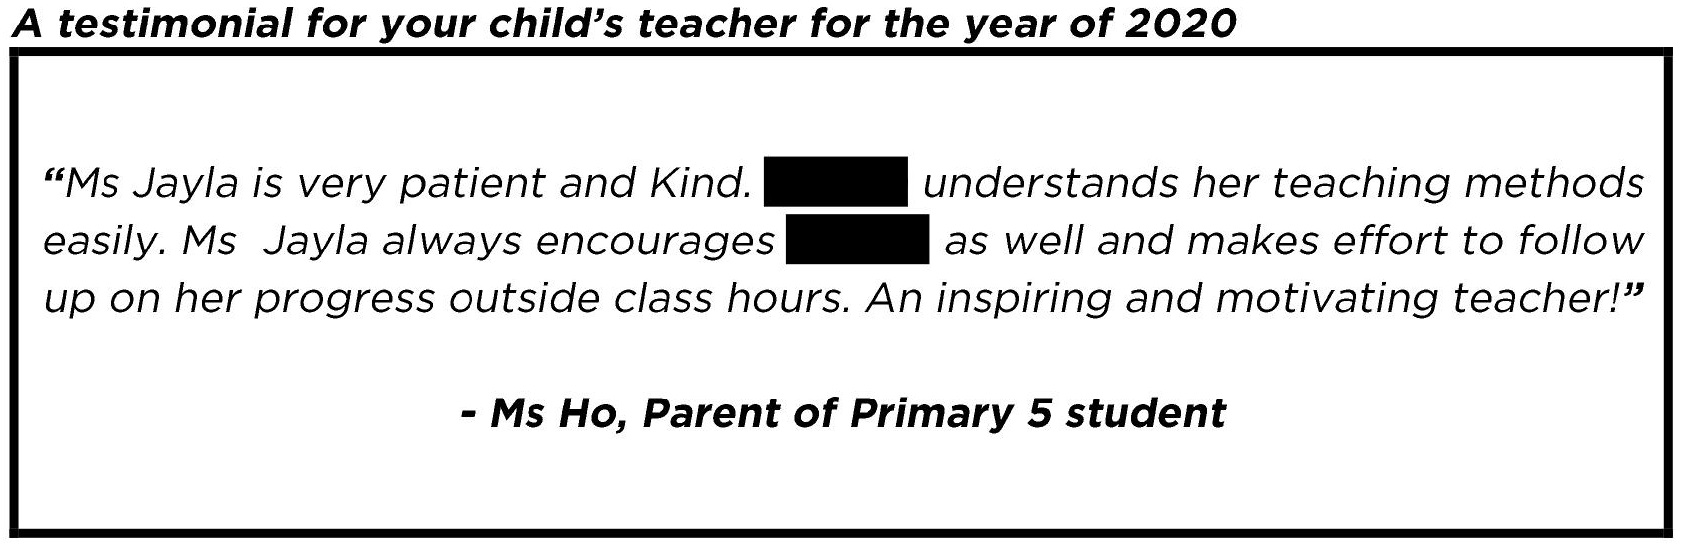 " An inspiring and motivating teacher!"